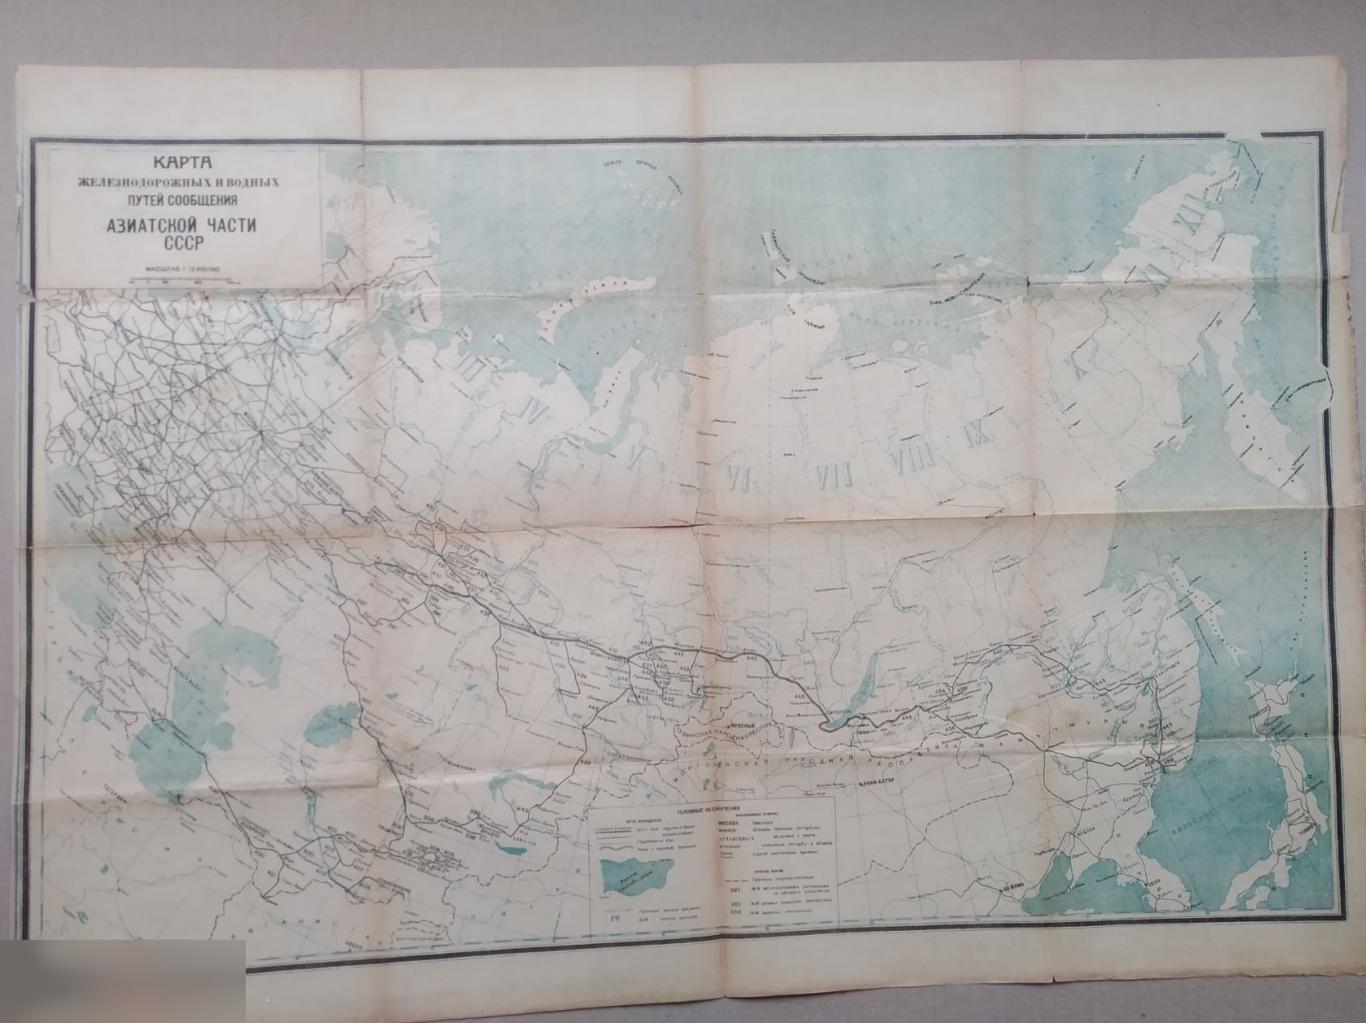 Карта Железнодорожных, Водных, Путей Сообщений, Европейской Азиатской Части СССР, 1934 год РЕДКАЯ ЖД 4